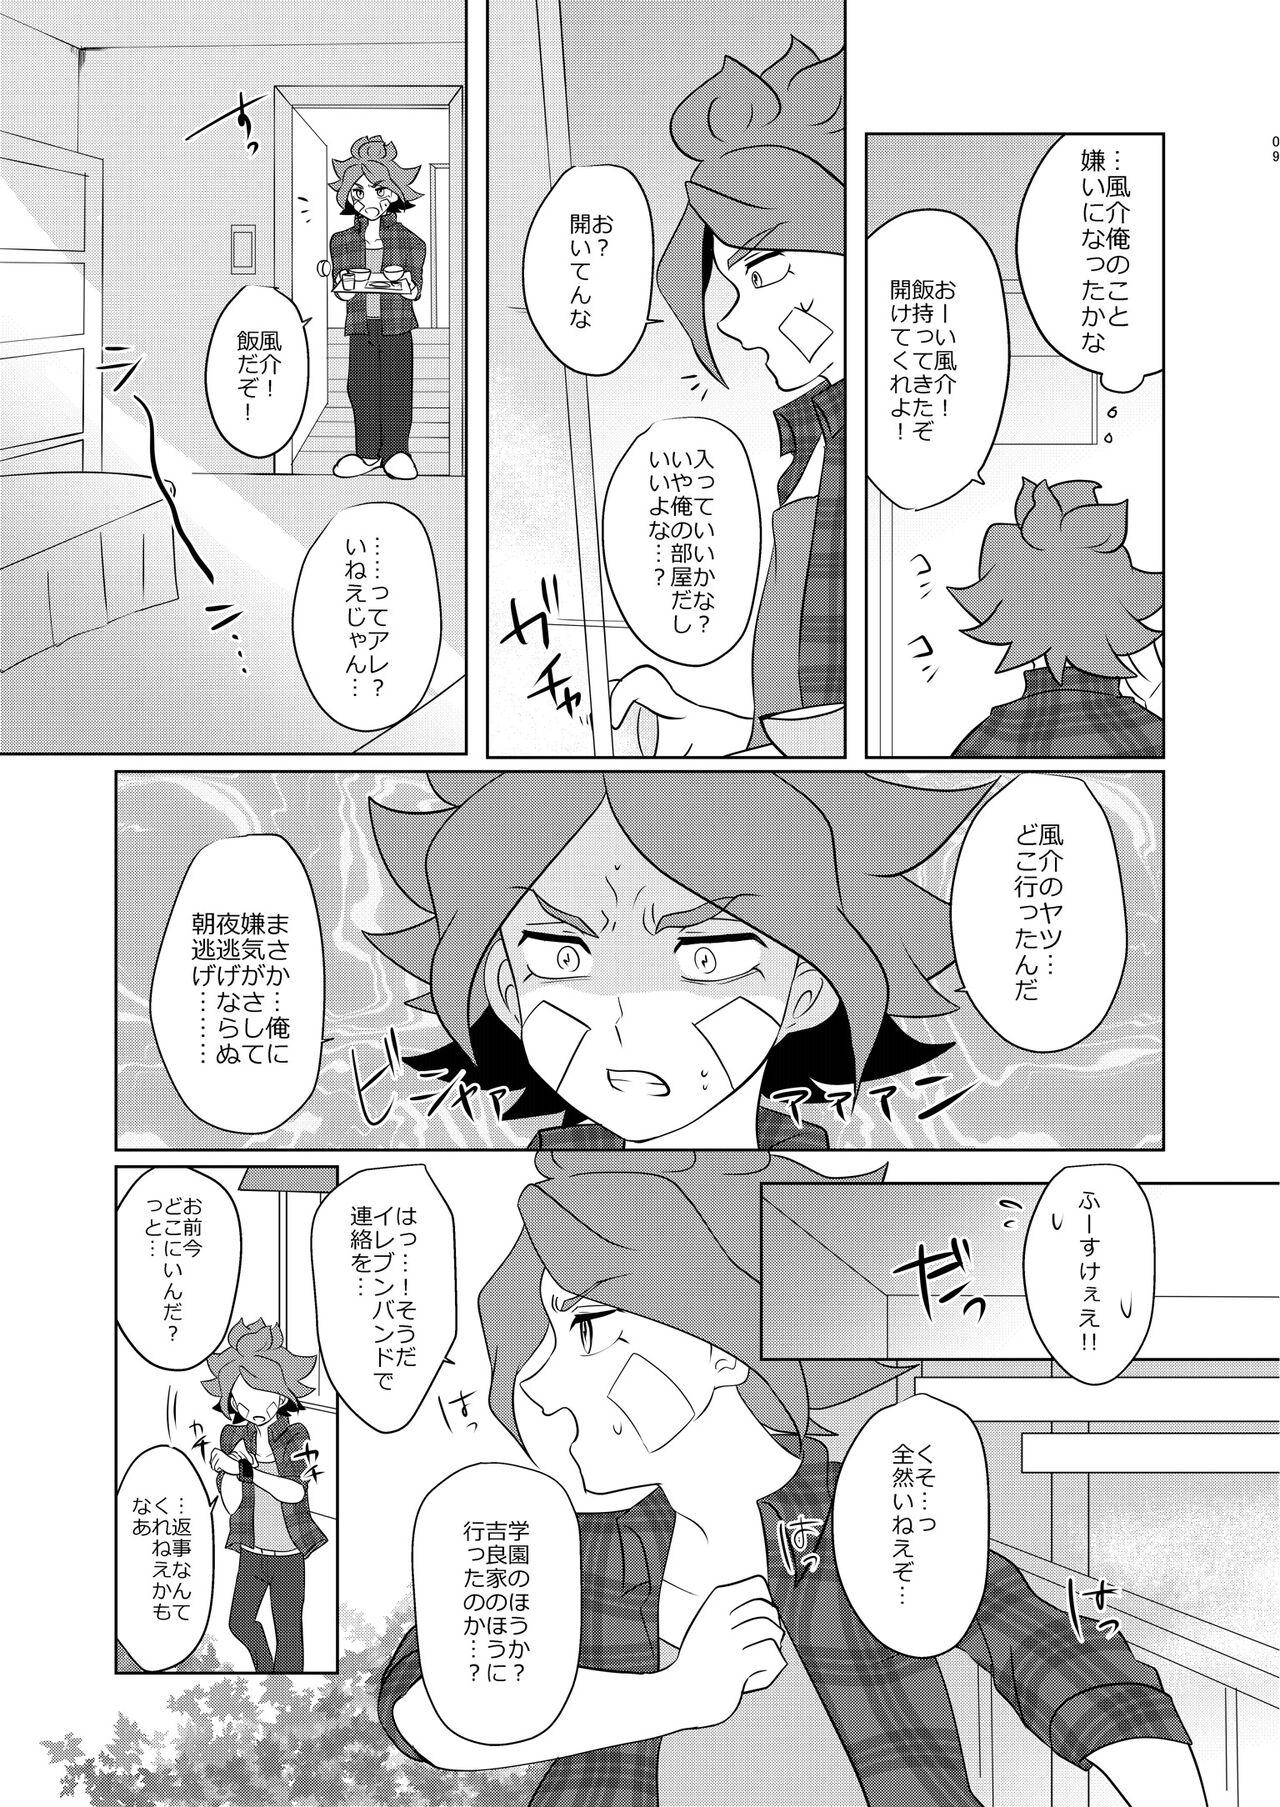 Les Watashi no Shiranai Kimi o Shiritai - Inazuma eleven Closeups - Page 8